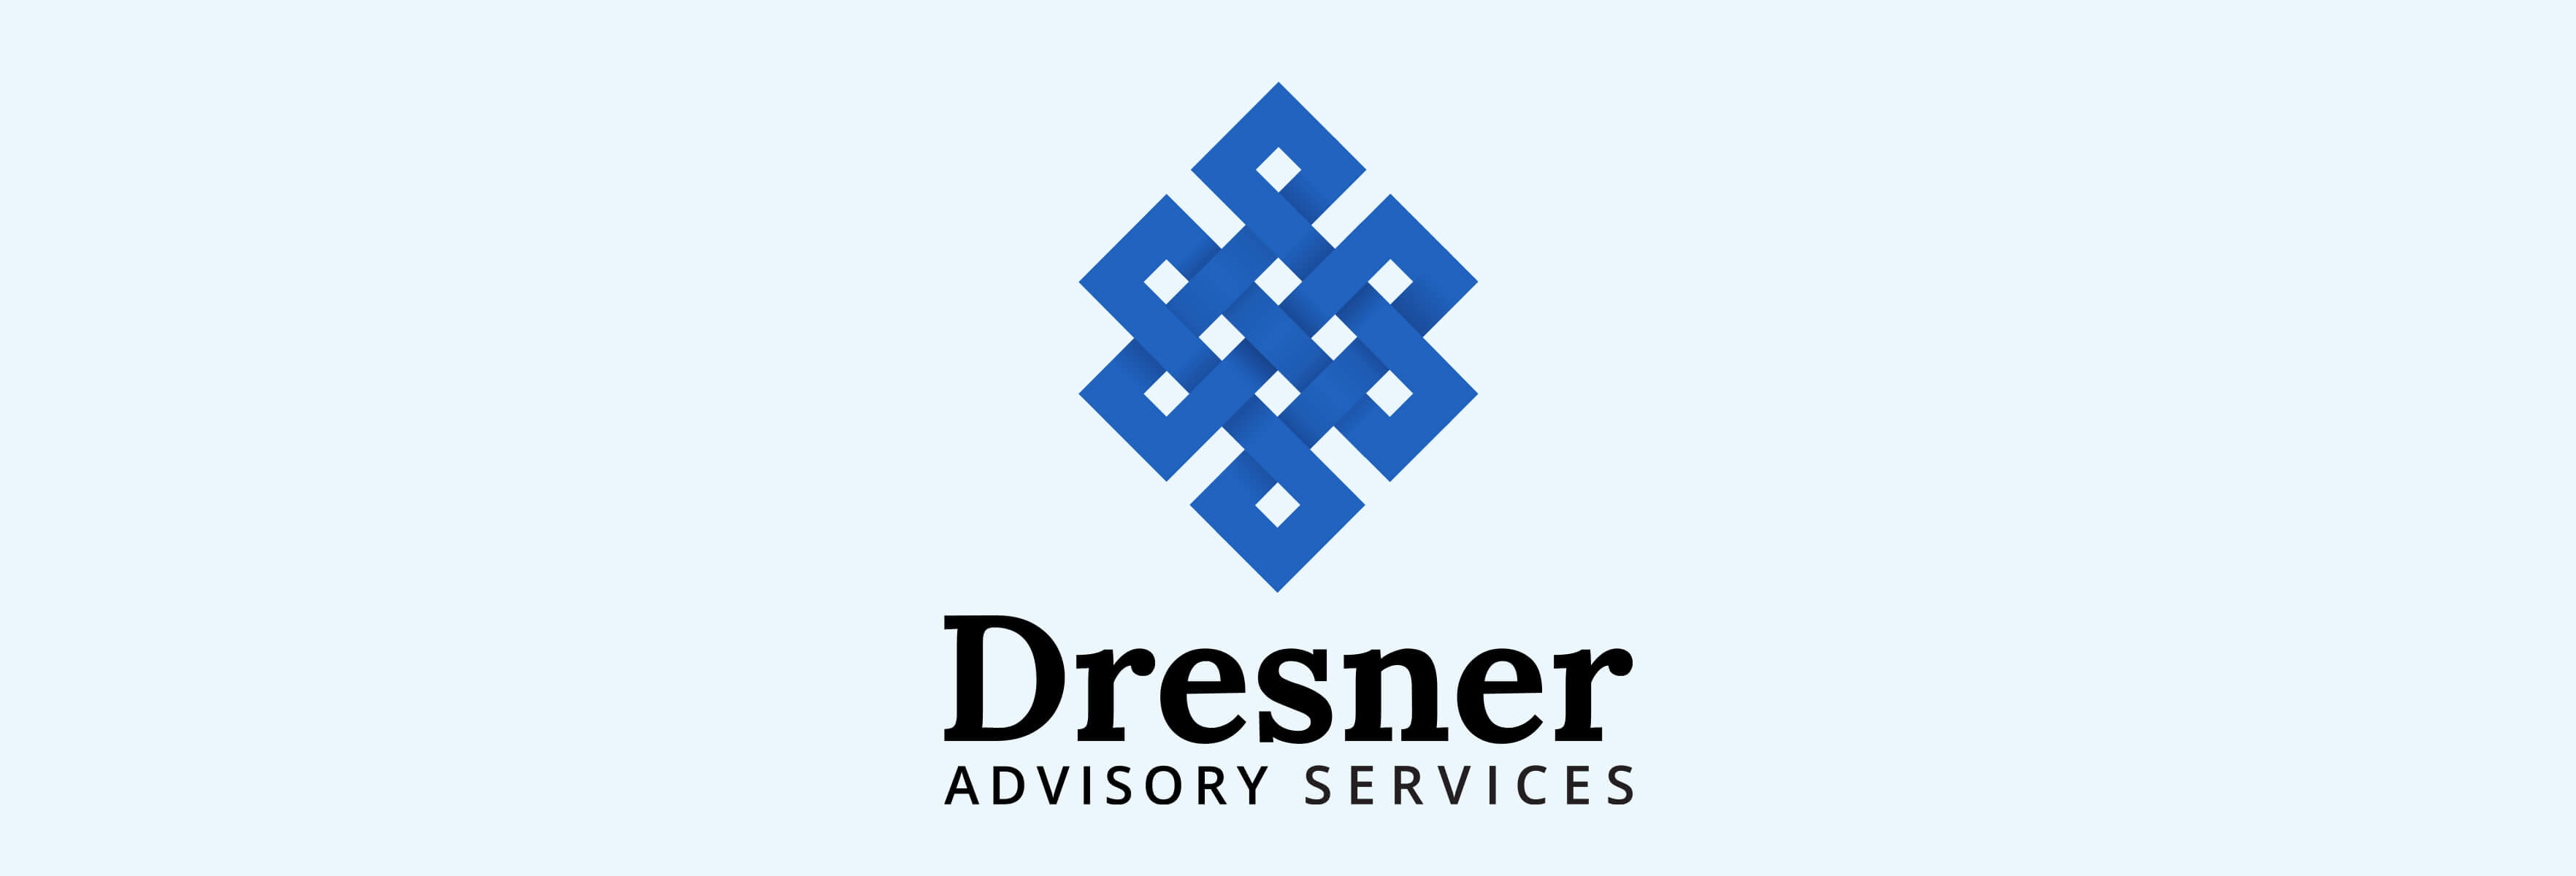 Dresner’s Advisory Services